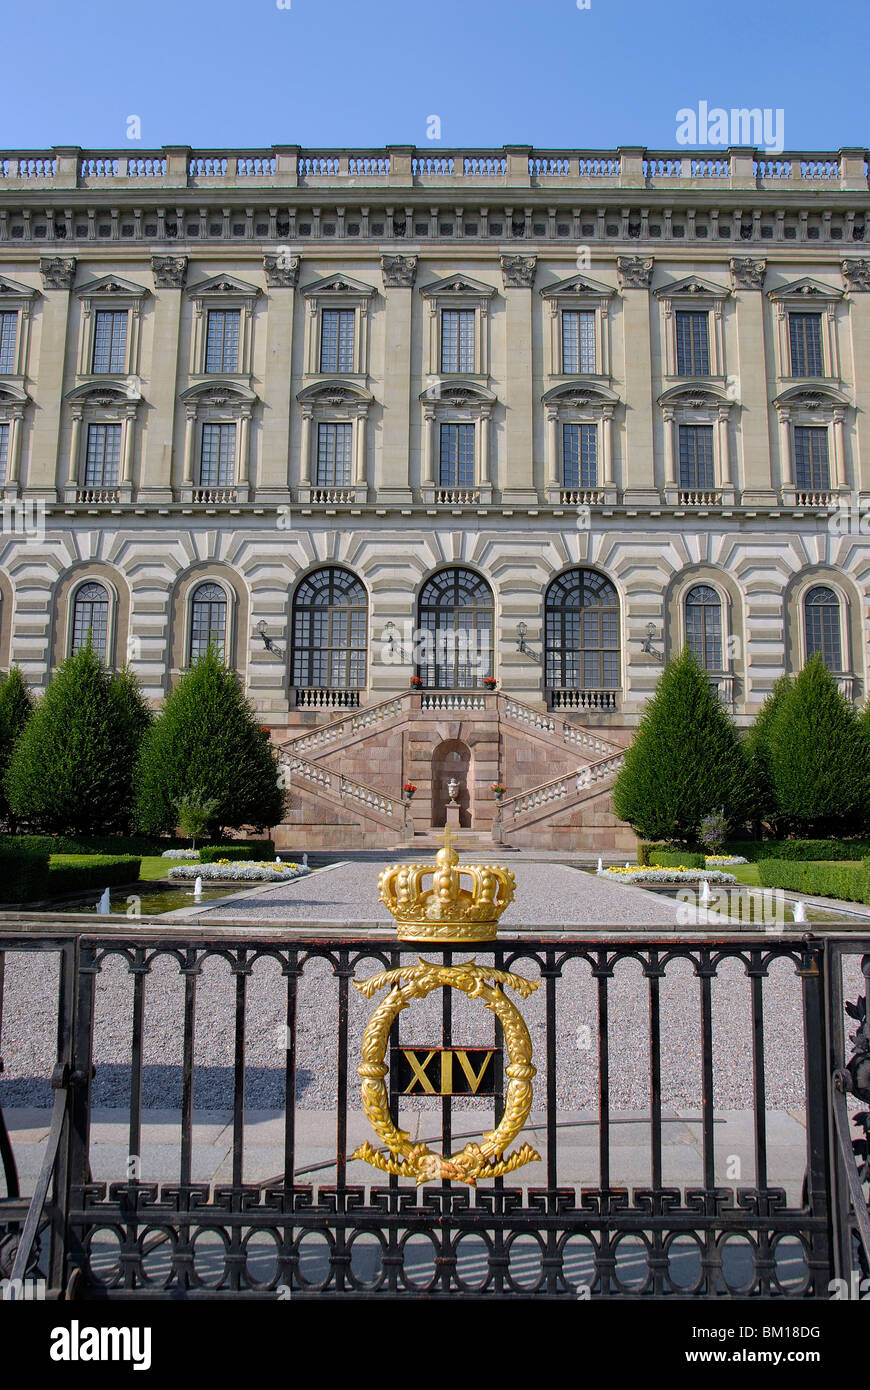 Le Palais de Stockholm KUNGLIGA SLOTTET, résidence officielle du monarque suédois, Stockholm, Suède, Scandinavie, Europe Banque D'Images